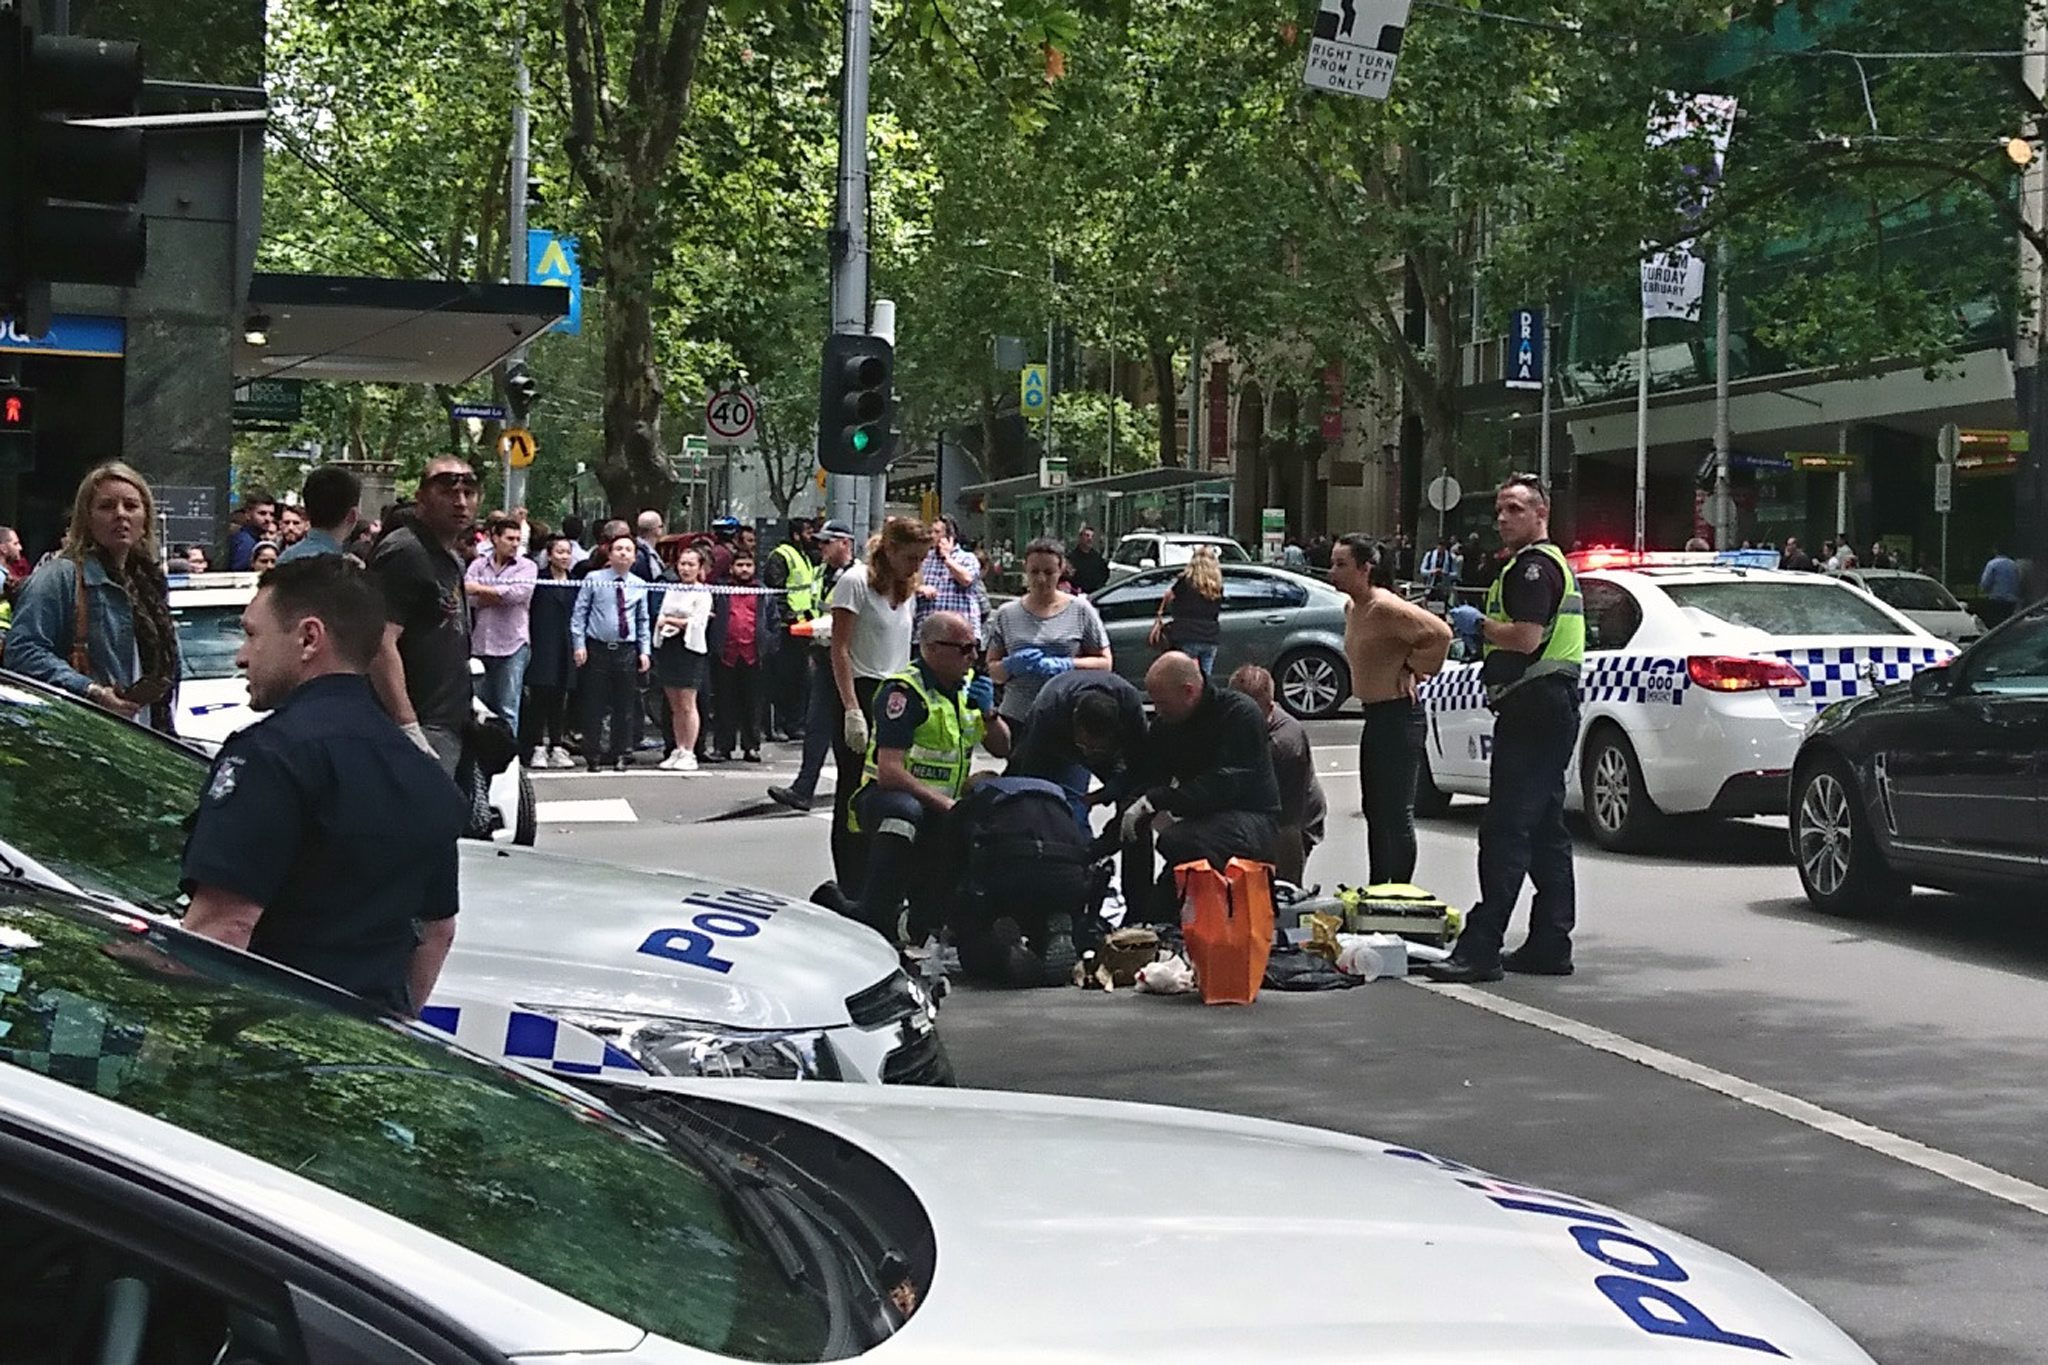 Μελβούρνη: ΙΧ πέφτει σε πεζούς - Τέσσερις νεκροί, ελληνικής καταγωγής ο δράστης